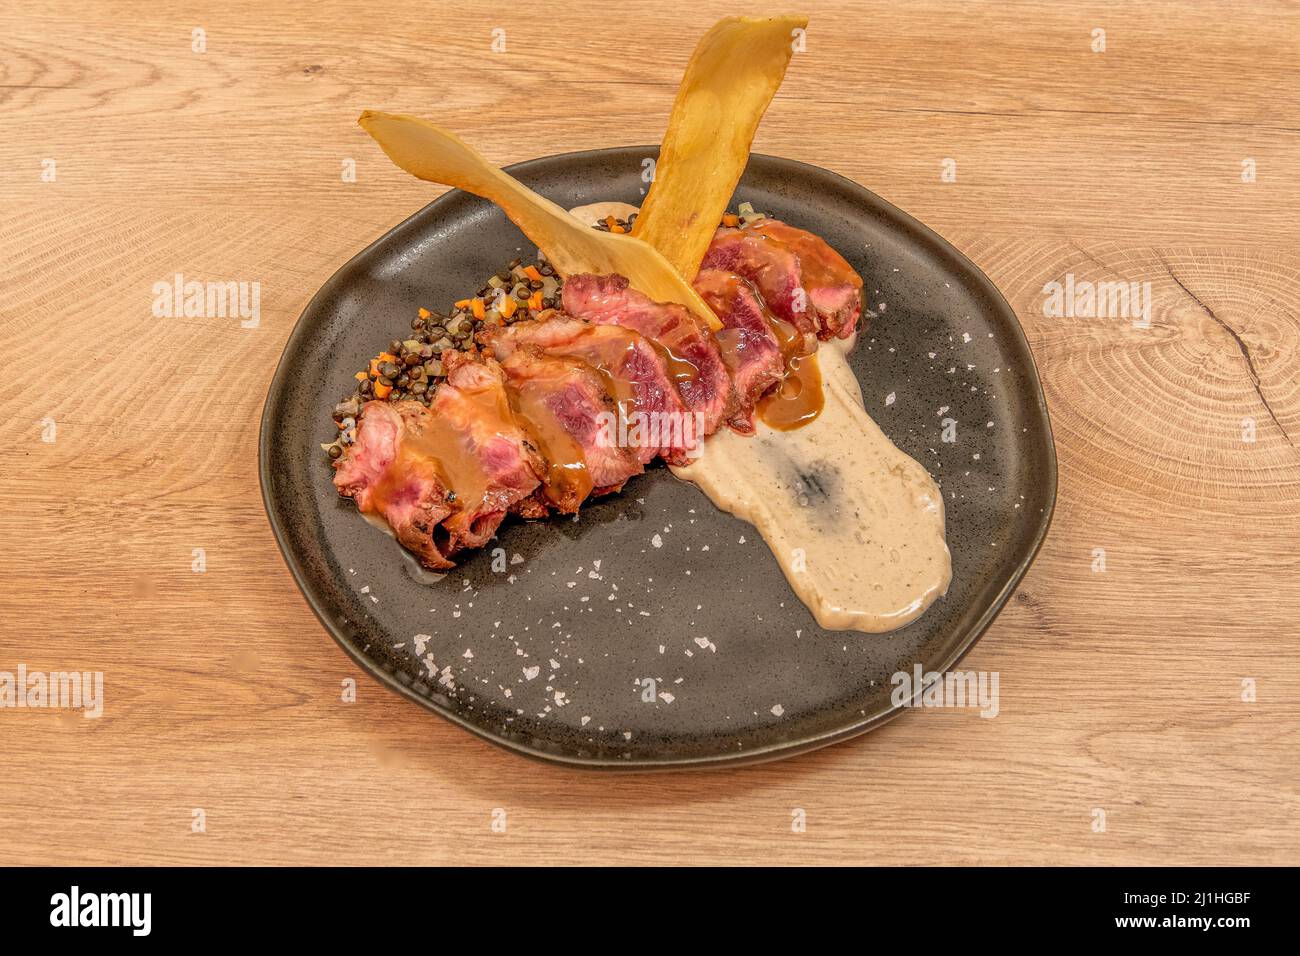 La presa ibérica es una de las carnes más preciadas del cerdo dada su calidad para elaborato embutidos tan deliciosos como el lomito ibérico de bellota Foto Stock